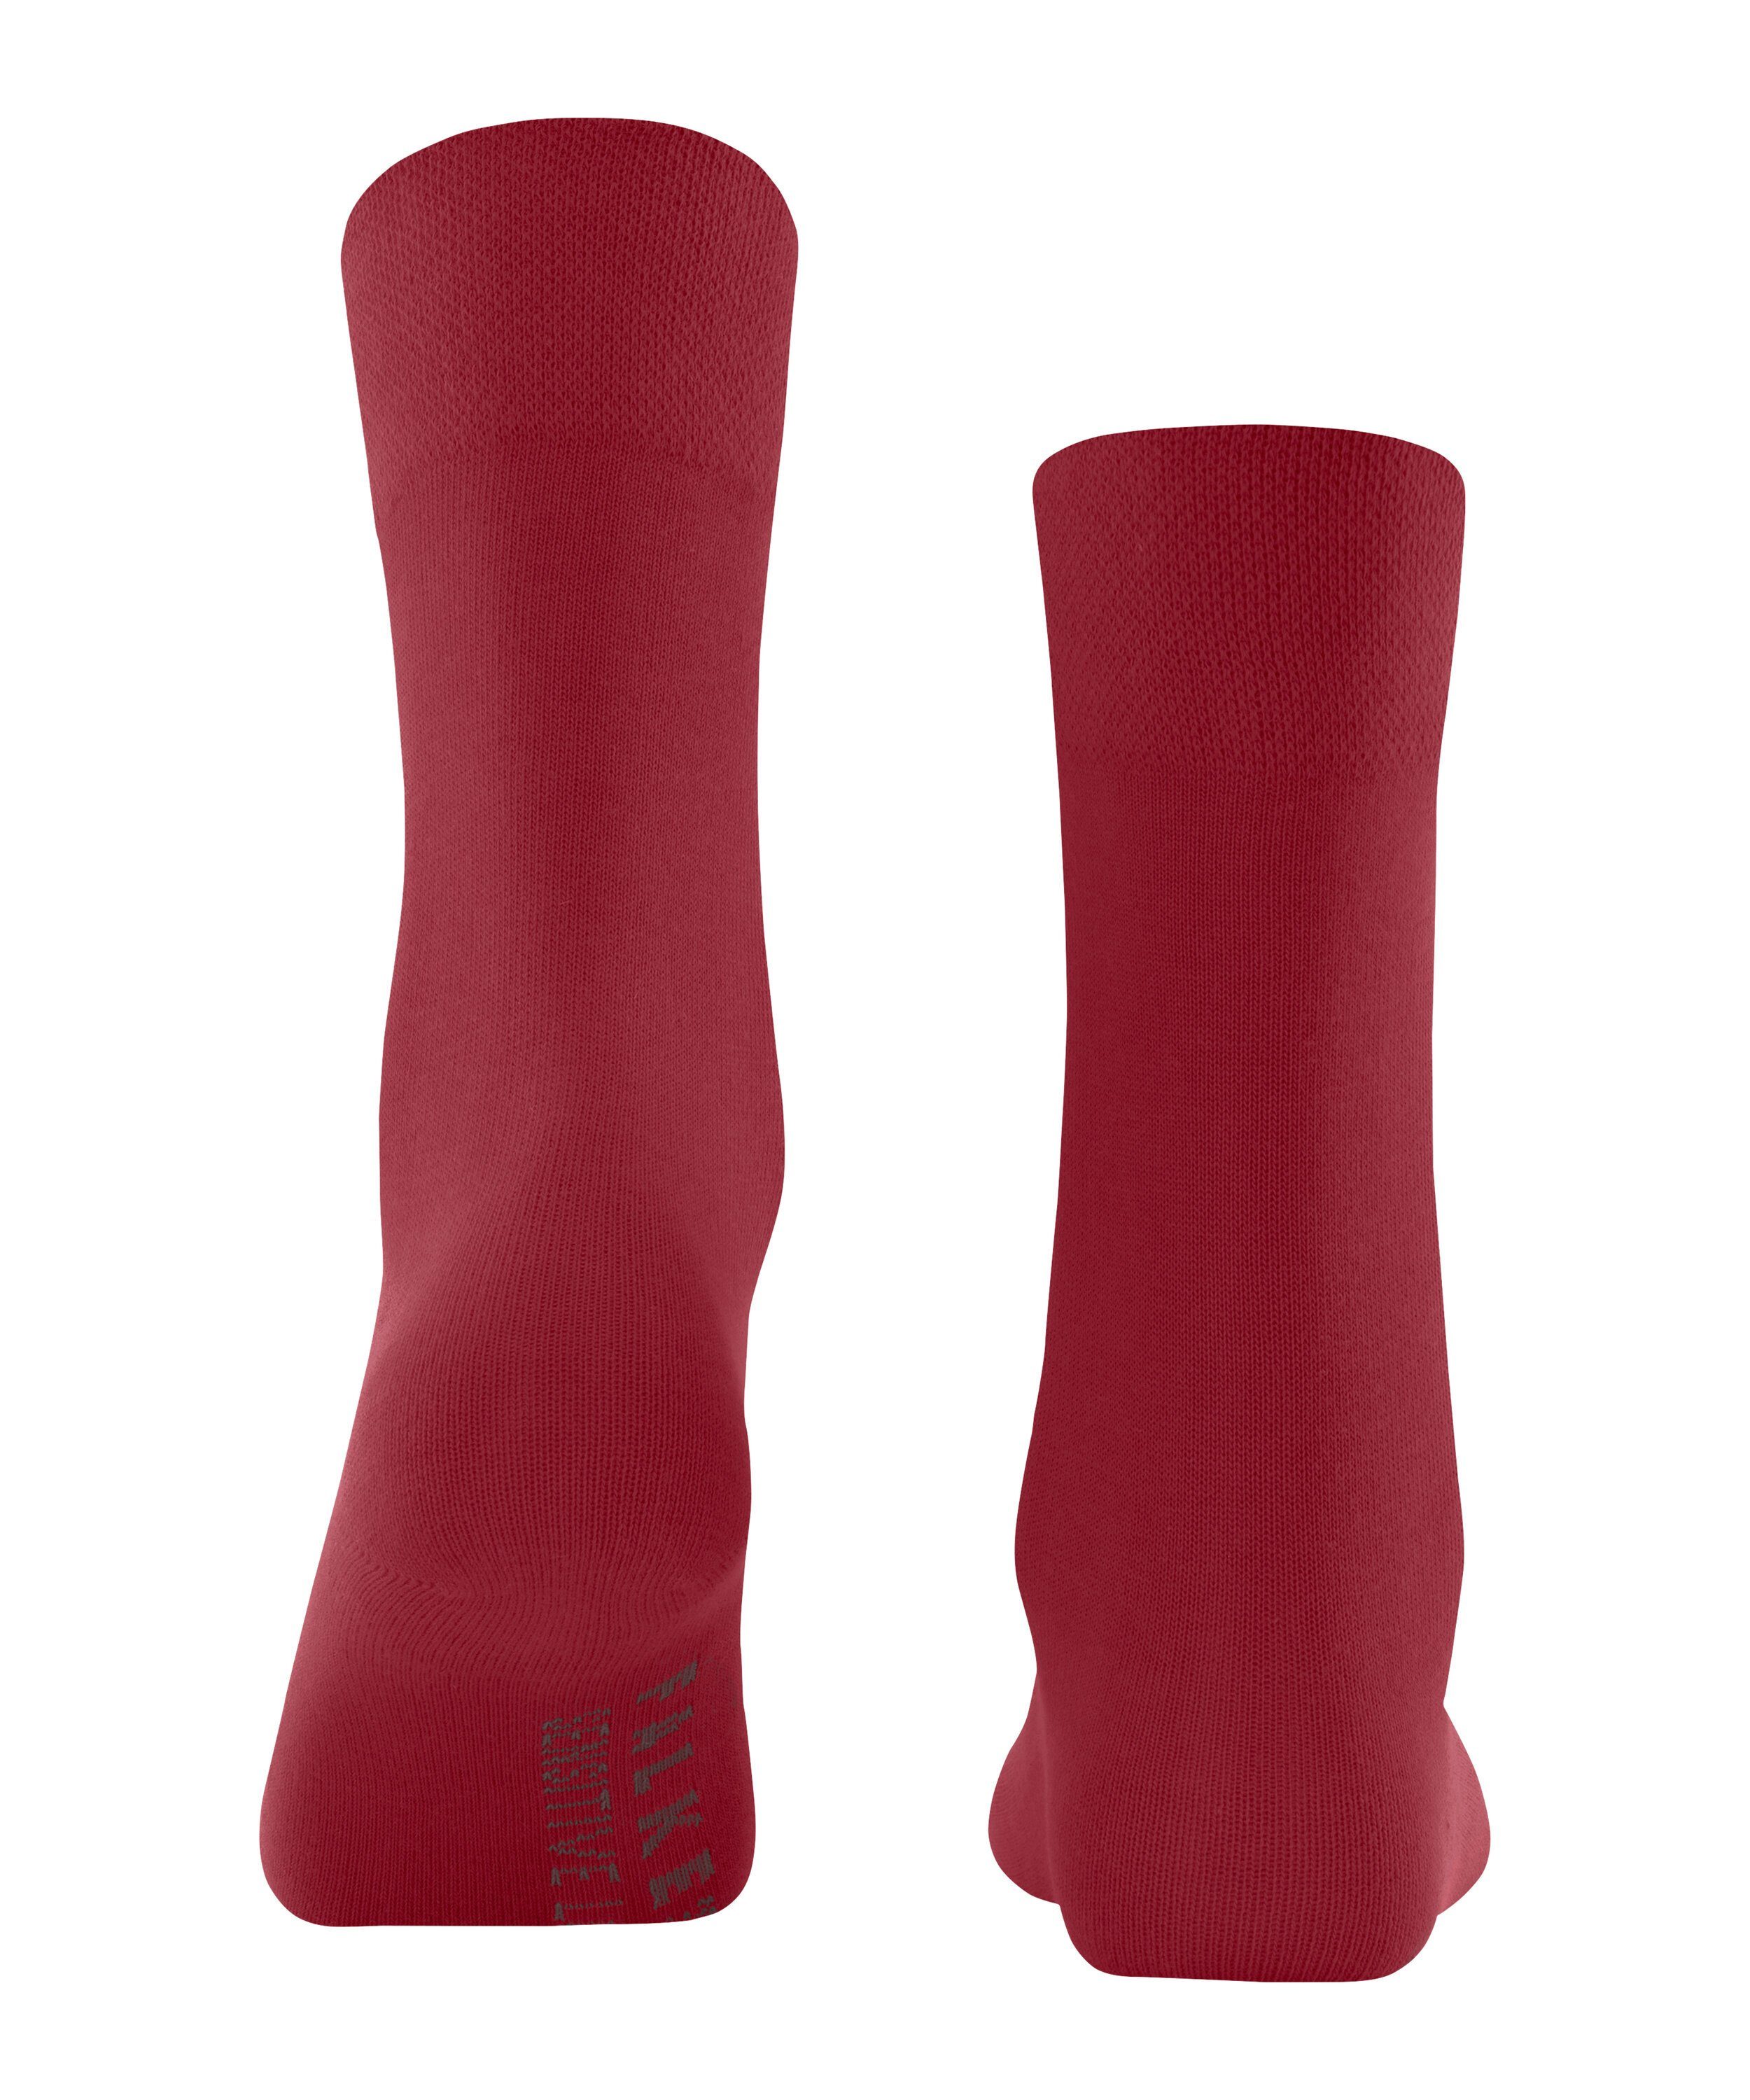 London FALKE Socken scarlet Sensitive (8228) (1-Paar)